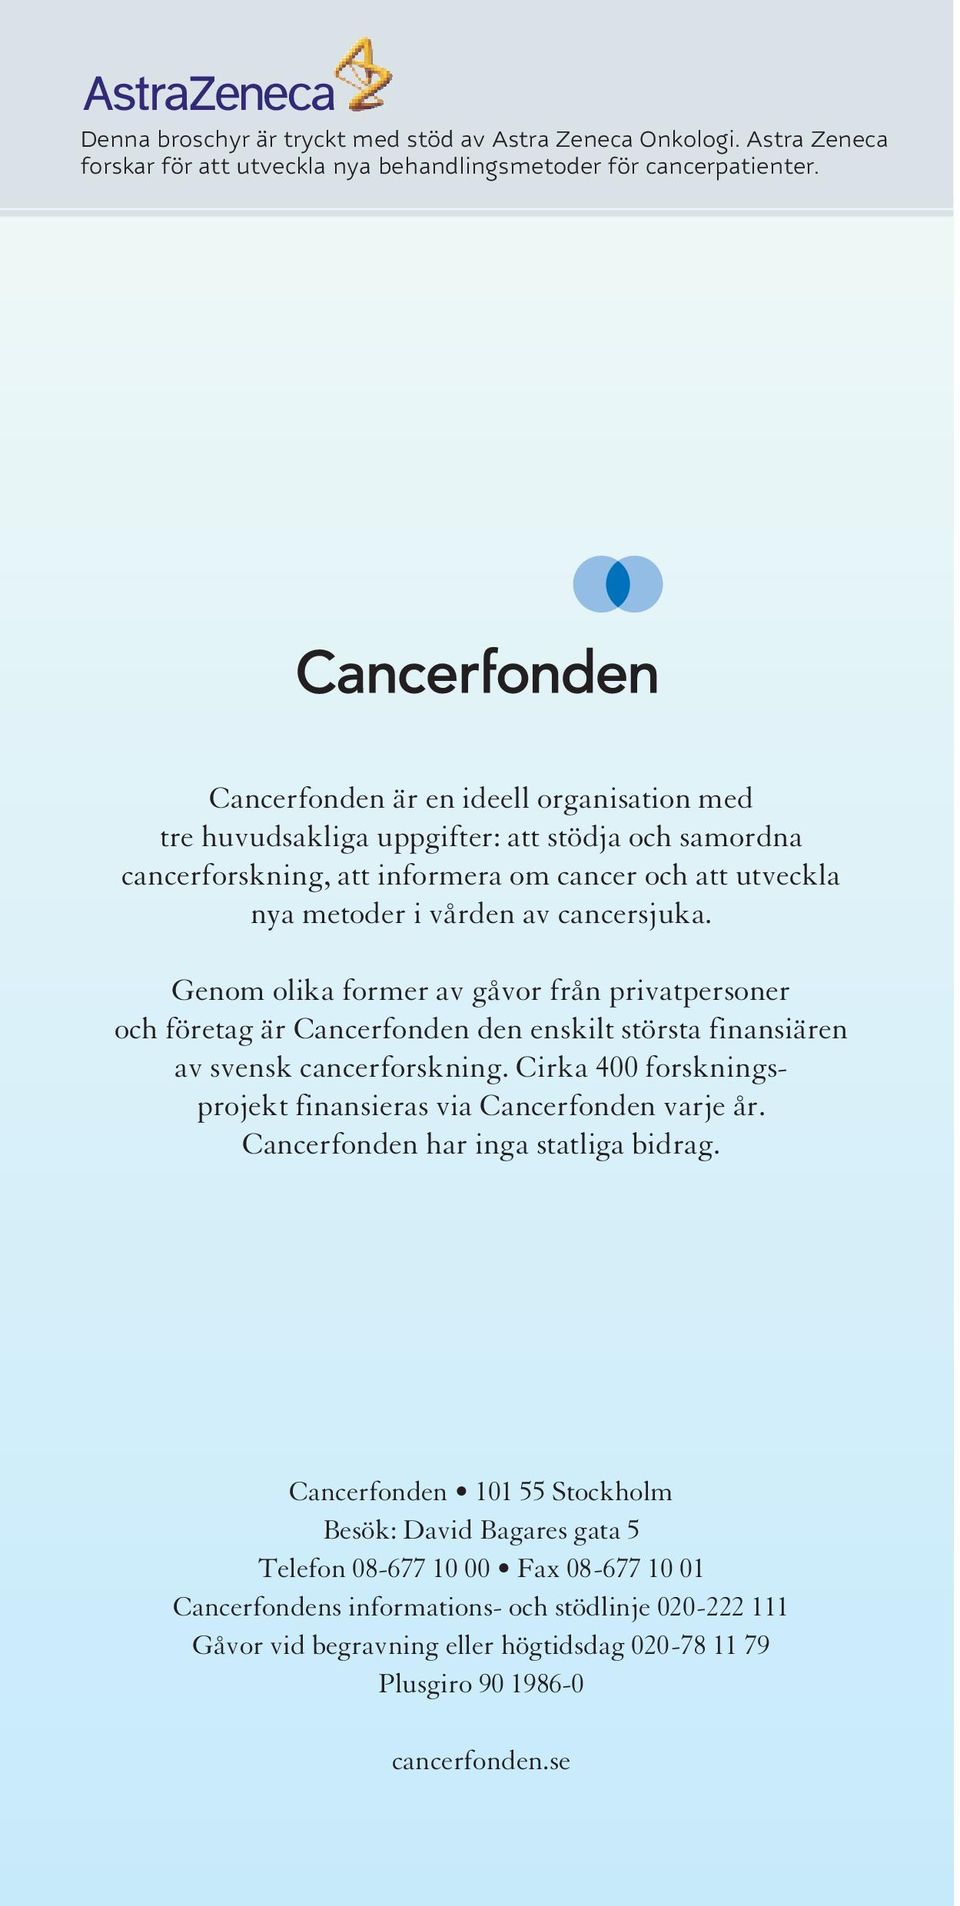 Genom olika former av gåvor från privatpersoner och företag är Cancerfonden den enskilt största finansiären av svensk cancerforskning.